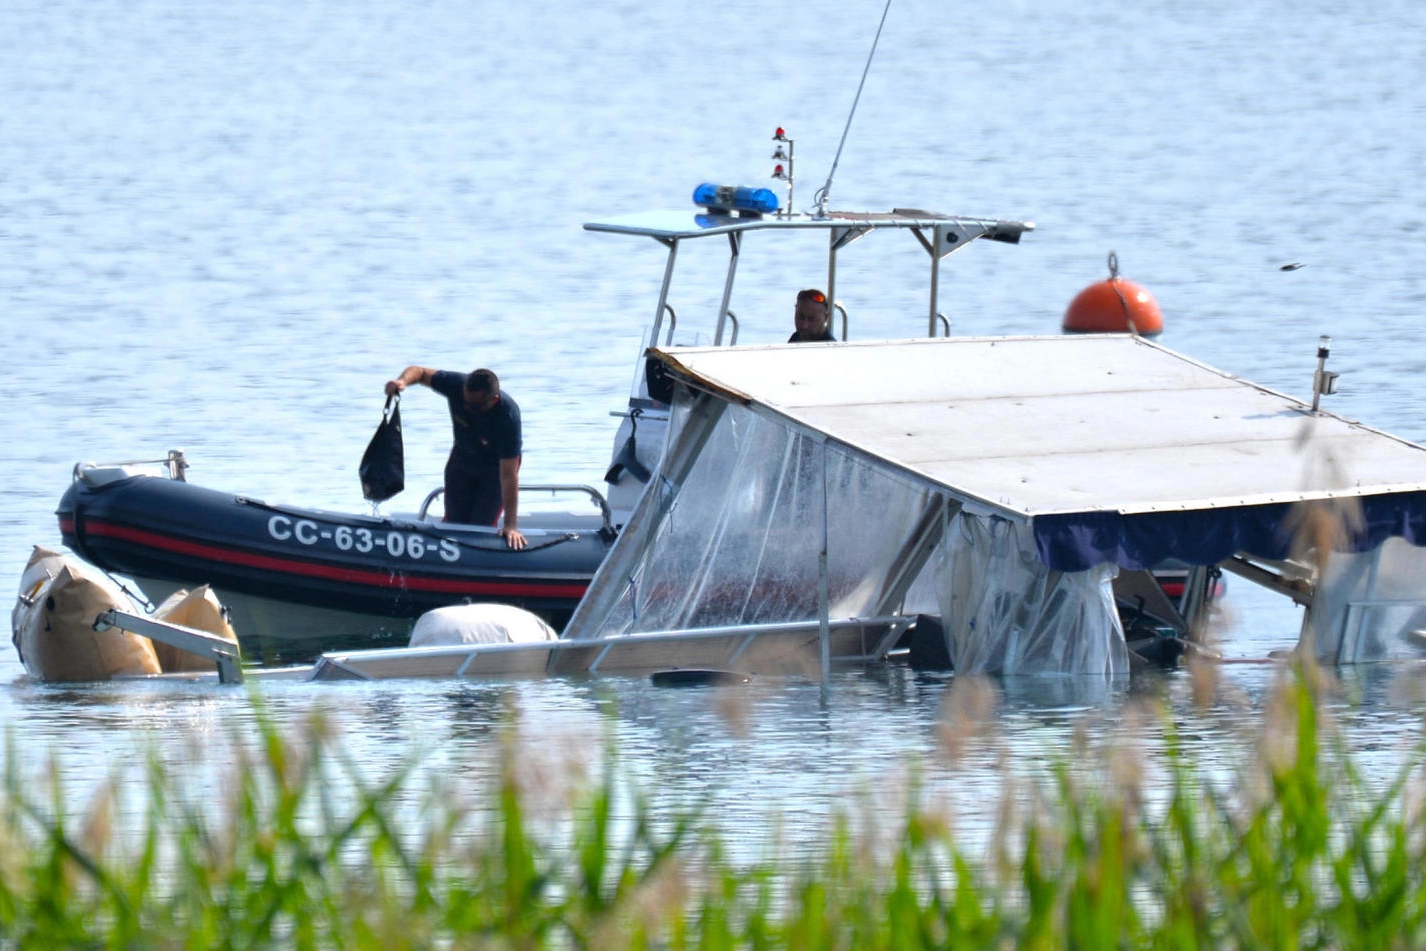 Il recupero dell’house-boat naufragata nel lago Maggiore domenica 28 maggio (Ansa)